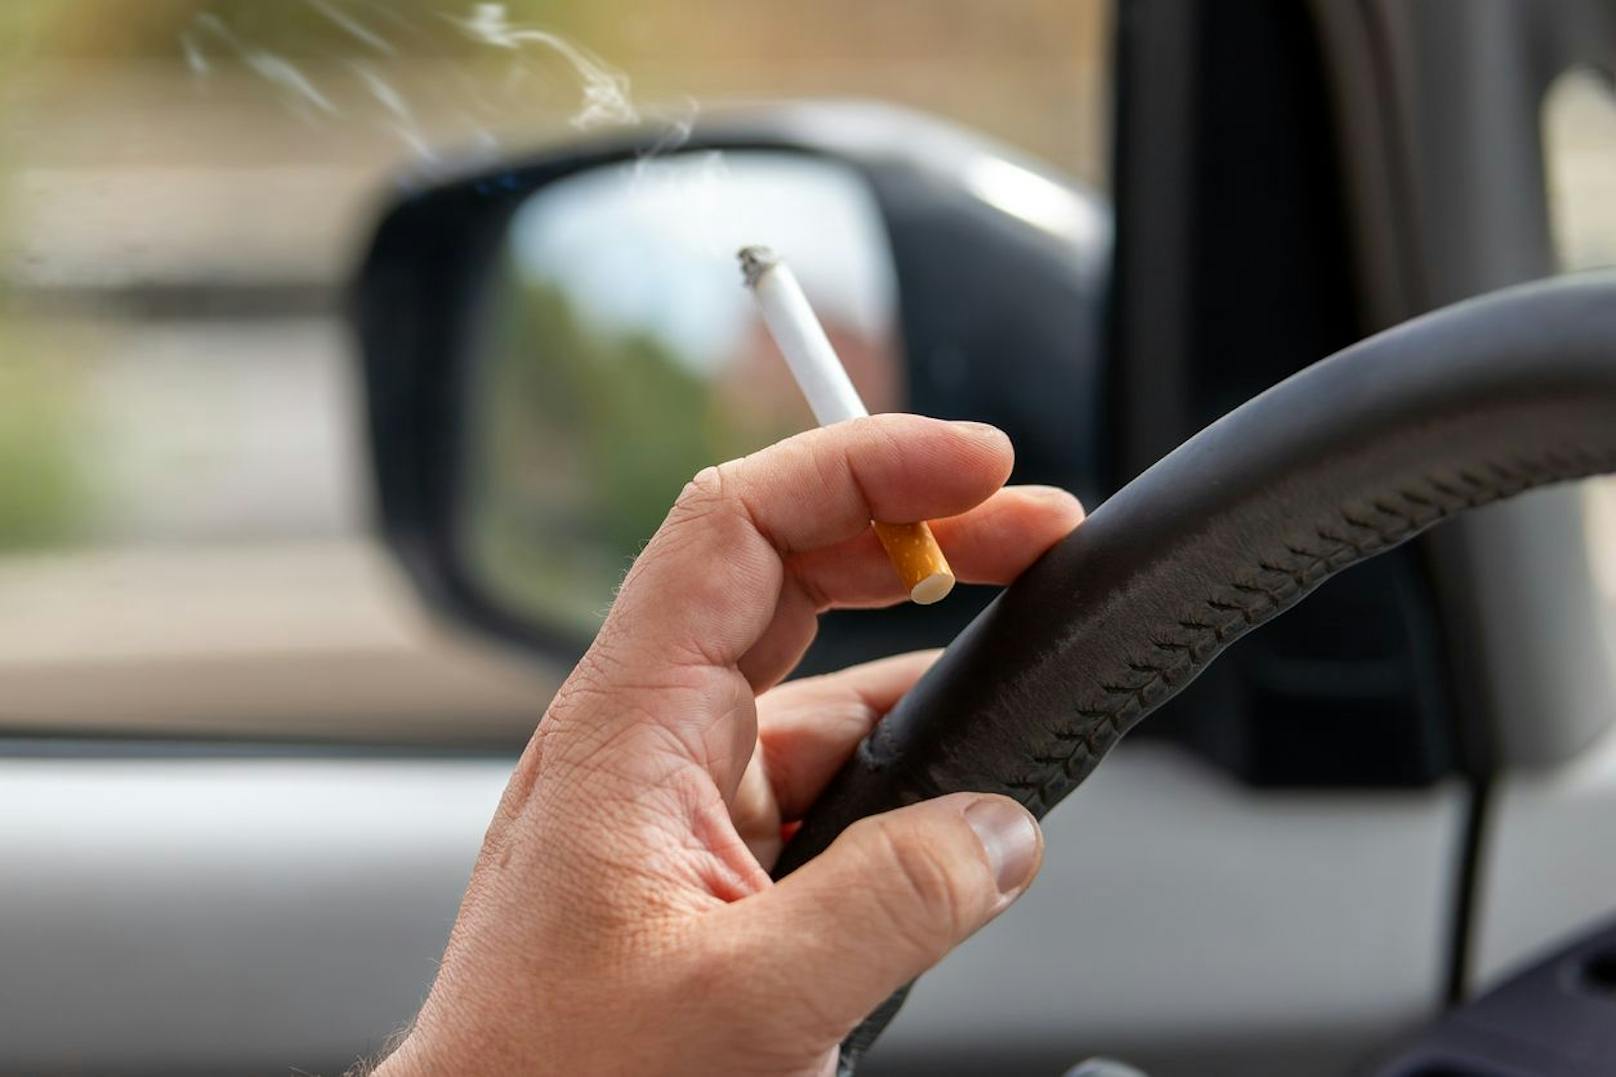 Geht es nach dem deutschen Gesundheitsminister Karl Lauterbach, wird das Rauchen im Auto unter gewissen Umständen bald verboten sein.